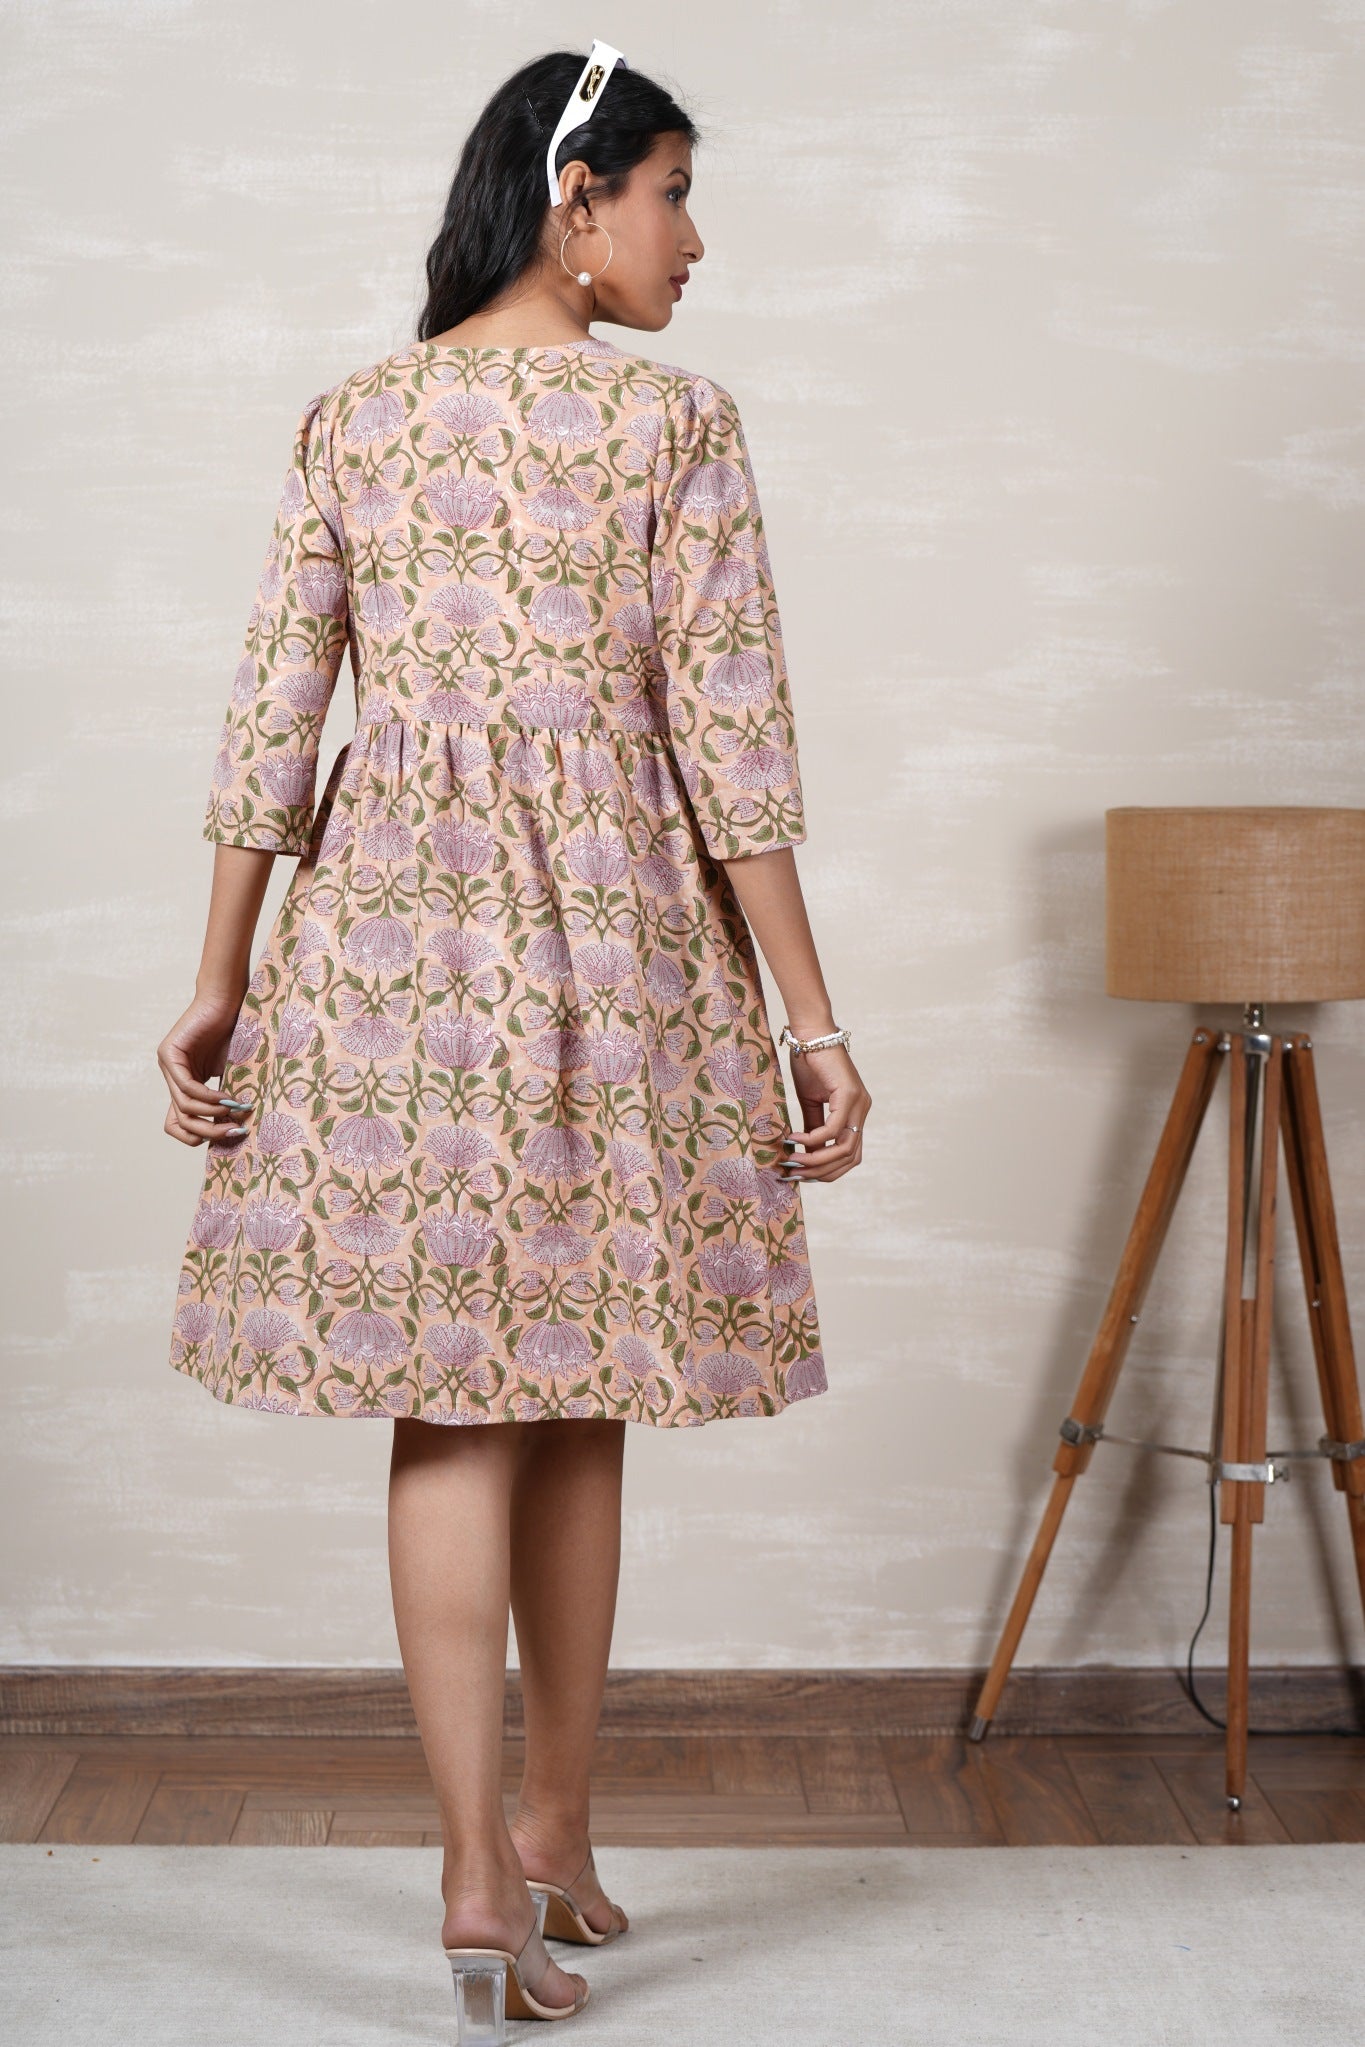 Lotus Love Hand Block Printed Cotton Dress - SootiSyahi